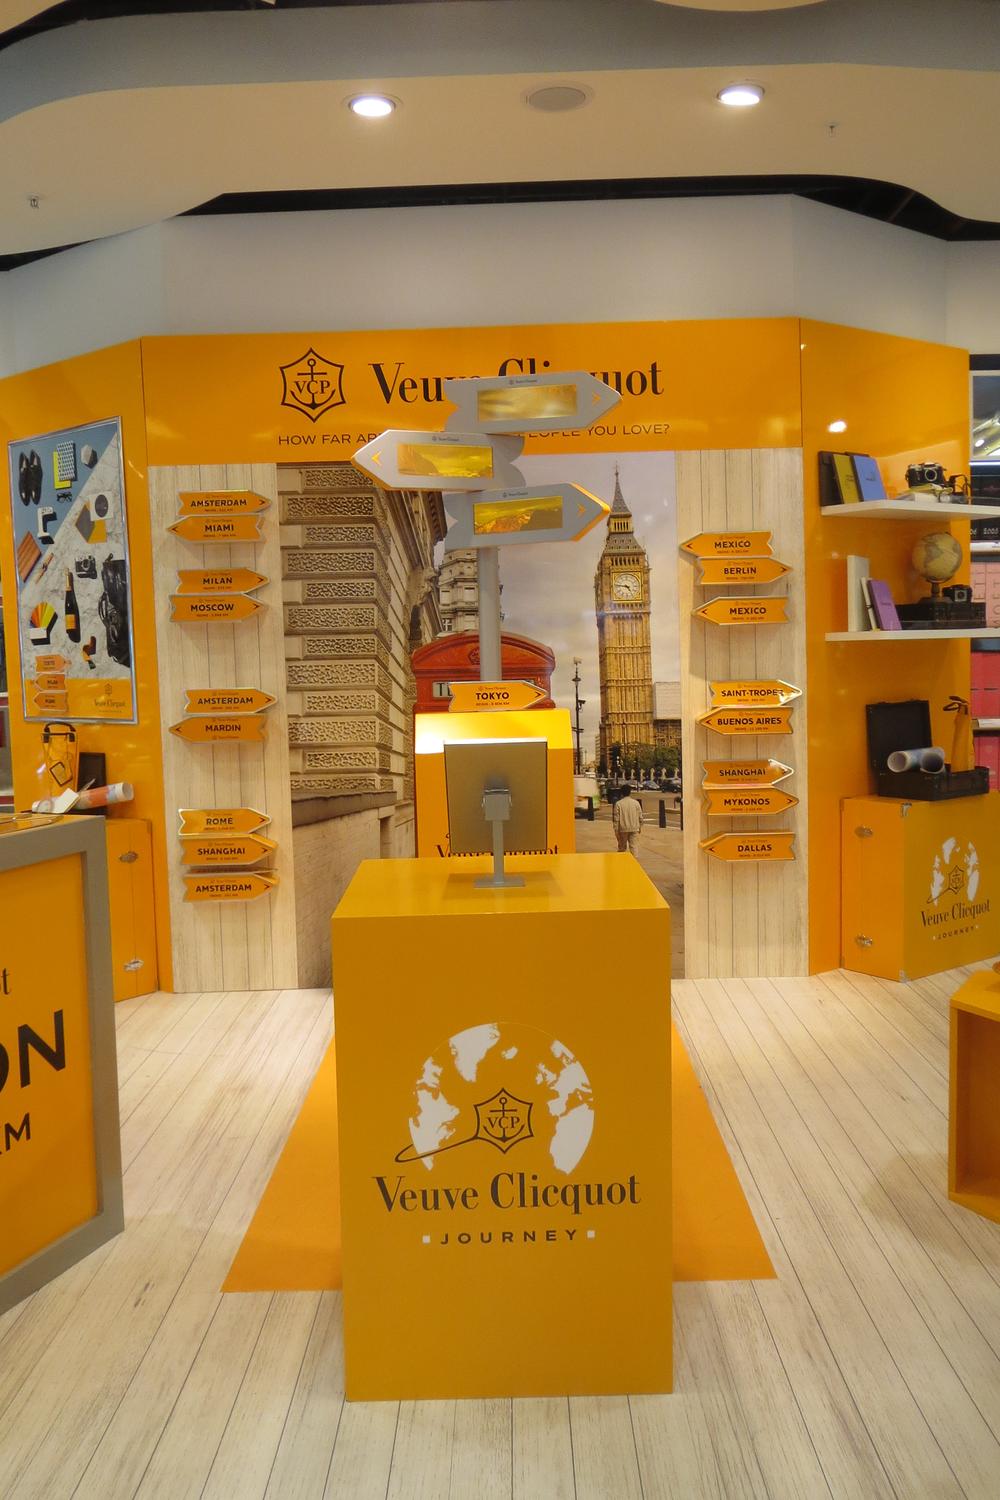 Veuve Clicquot's podium animation